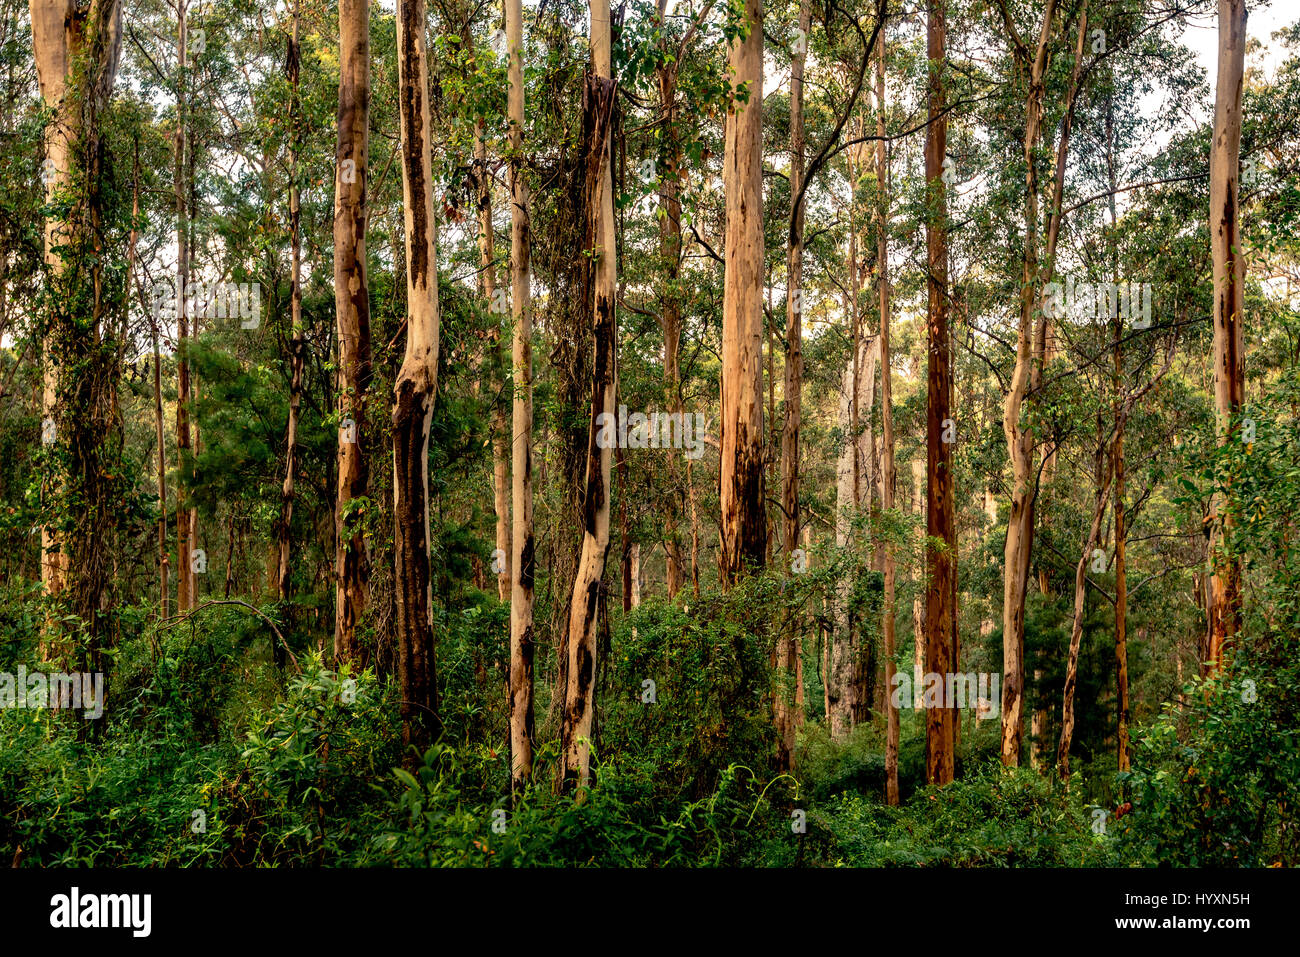 El bosque de Karri del sudoeste de Australia Occidental es uno de los edificios más altos del mundo. Karri árboles puede crecer hasta 90 m (290 pies) de altura. Foto de stock